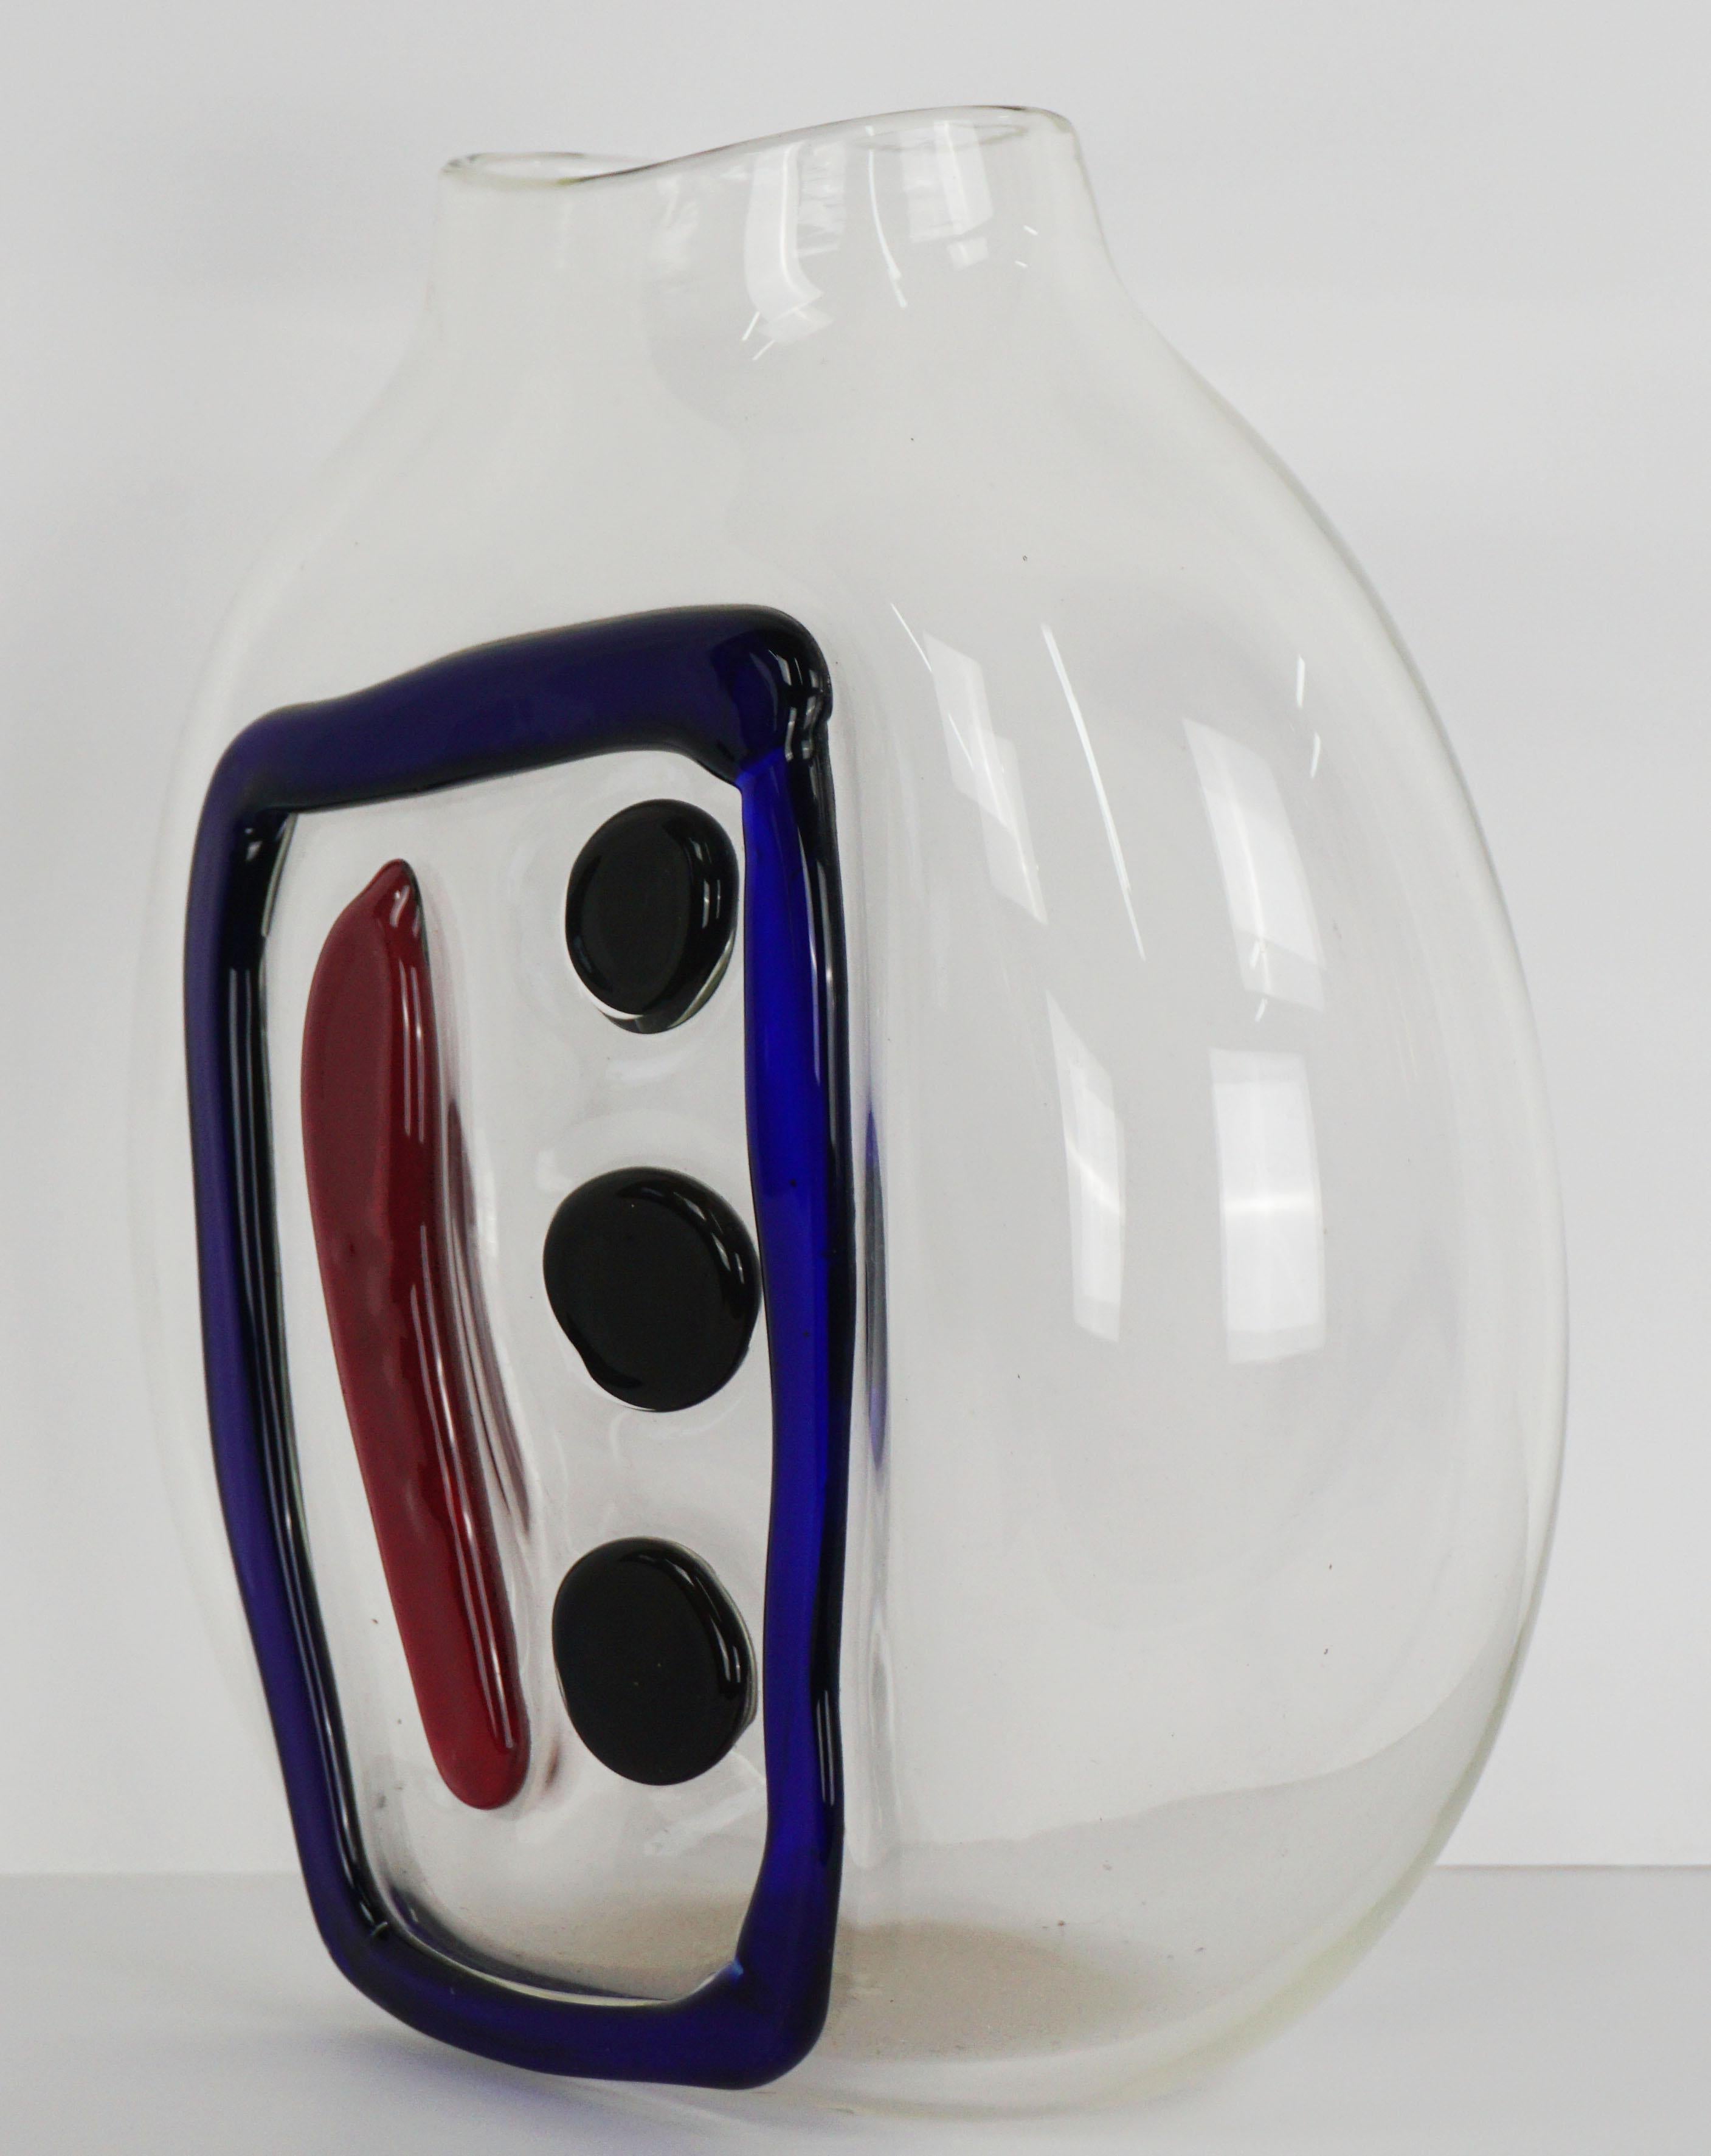 Vase en verre soufflé transparent merveilleusement moderne avec un tiret en boîte et trois points par Nadine Saylor (américaine, 20e siècle), 2004. Signé et daté en bas. État : excellent. Mesure 10,5 